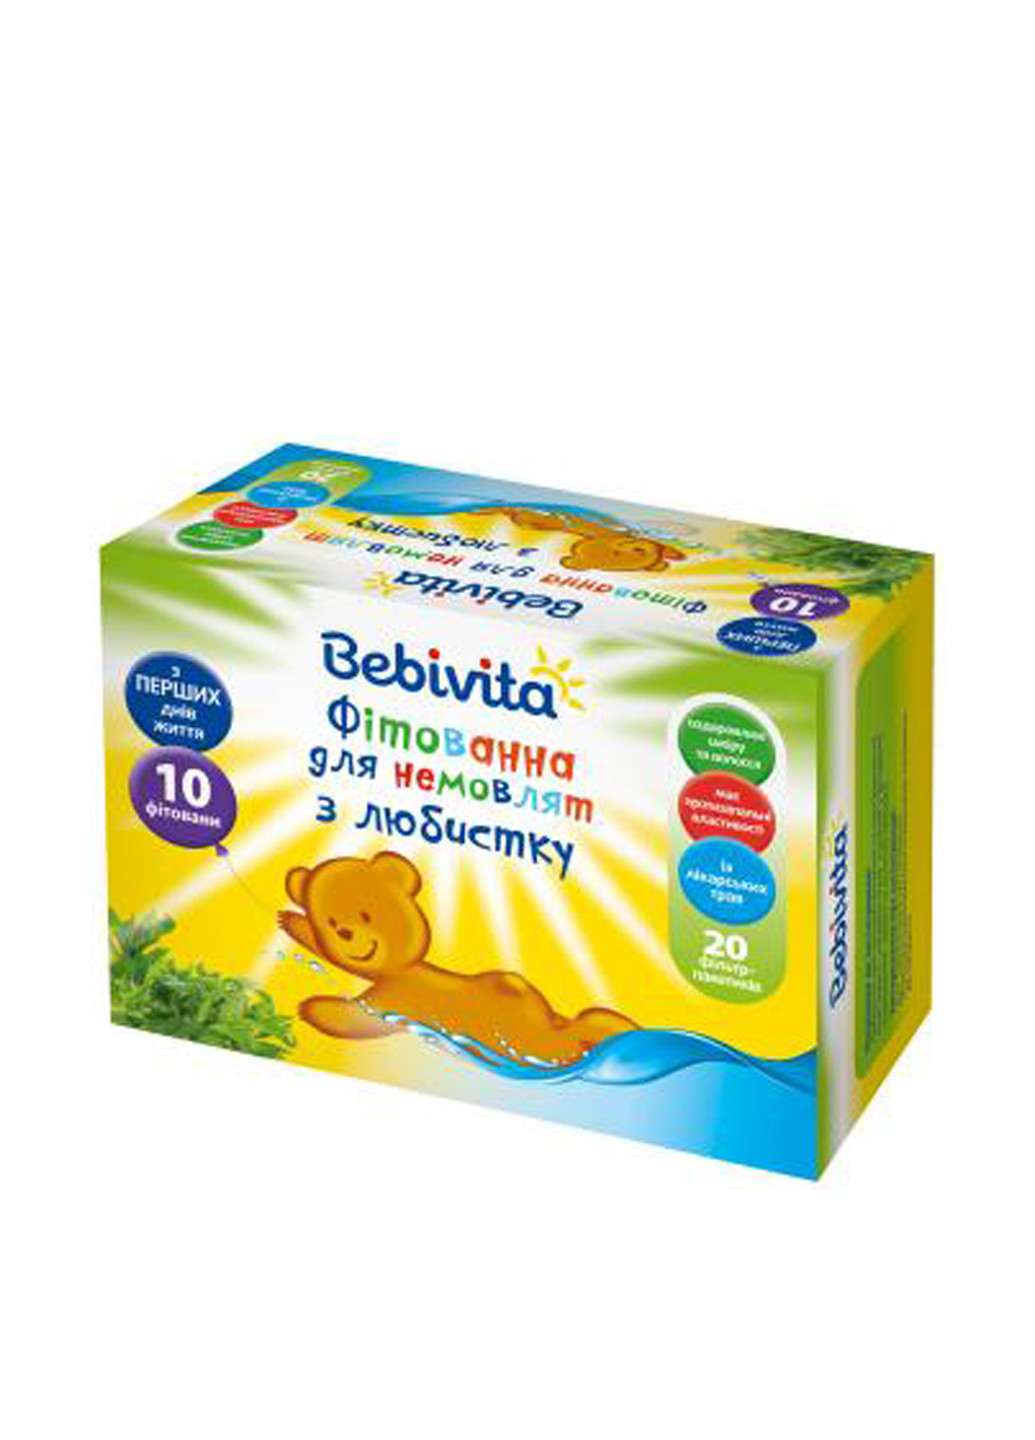 Фитованна для малышей из любистка, 20х1,5 г Bebivita (138200631)